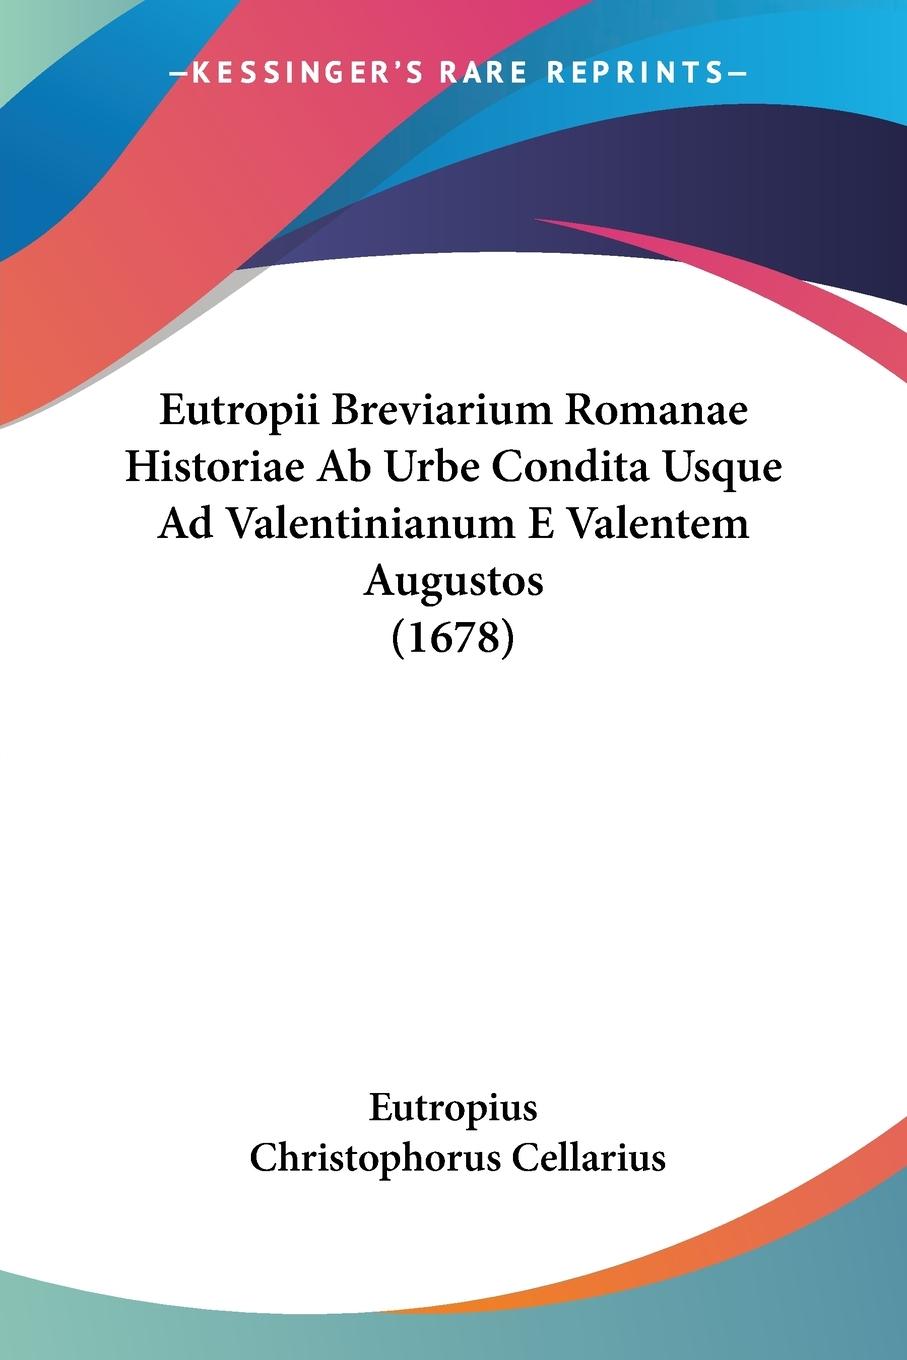 Eutropii Breviarium Romanae Historiae Ab Urbe Condita Usque Ad Valentinianum E Valentem Augustos (1678) - Eutropius Cellarius, Christophorus